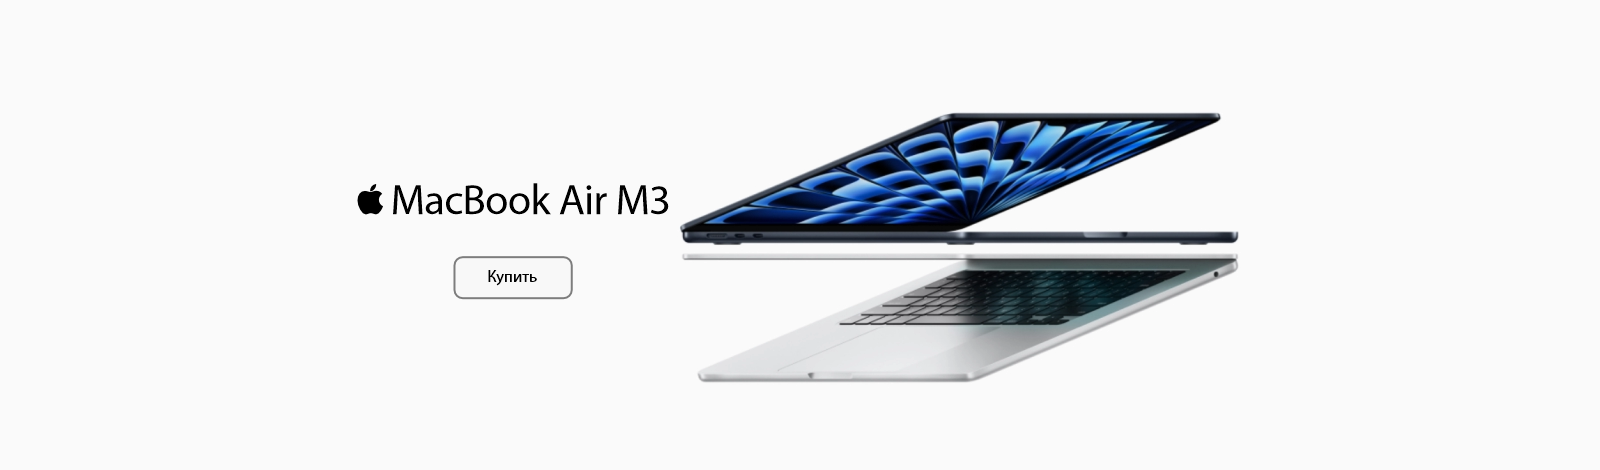 *MacBook Air M3